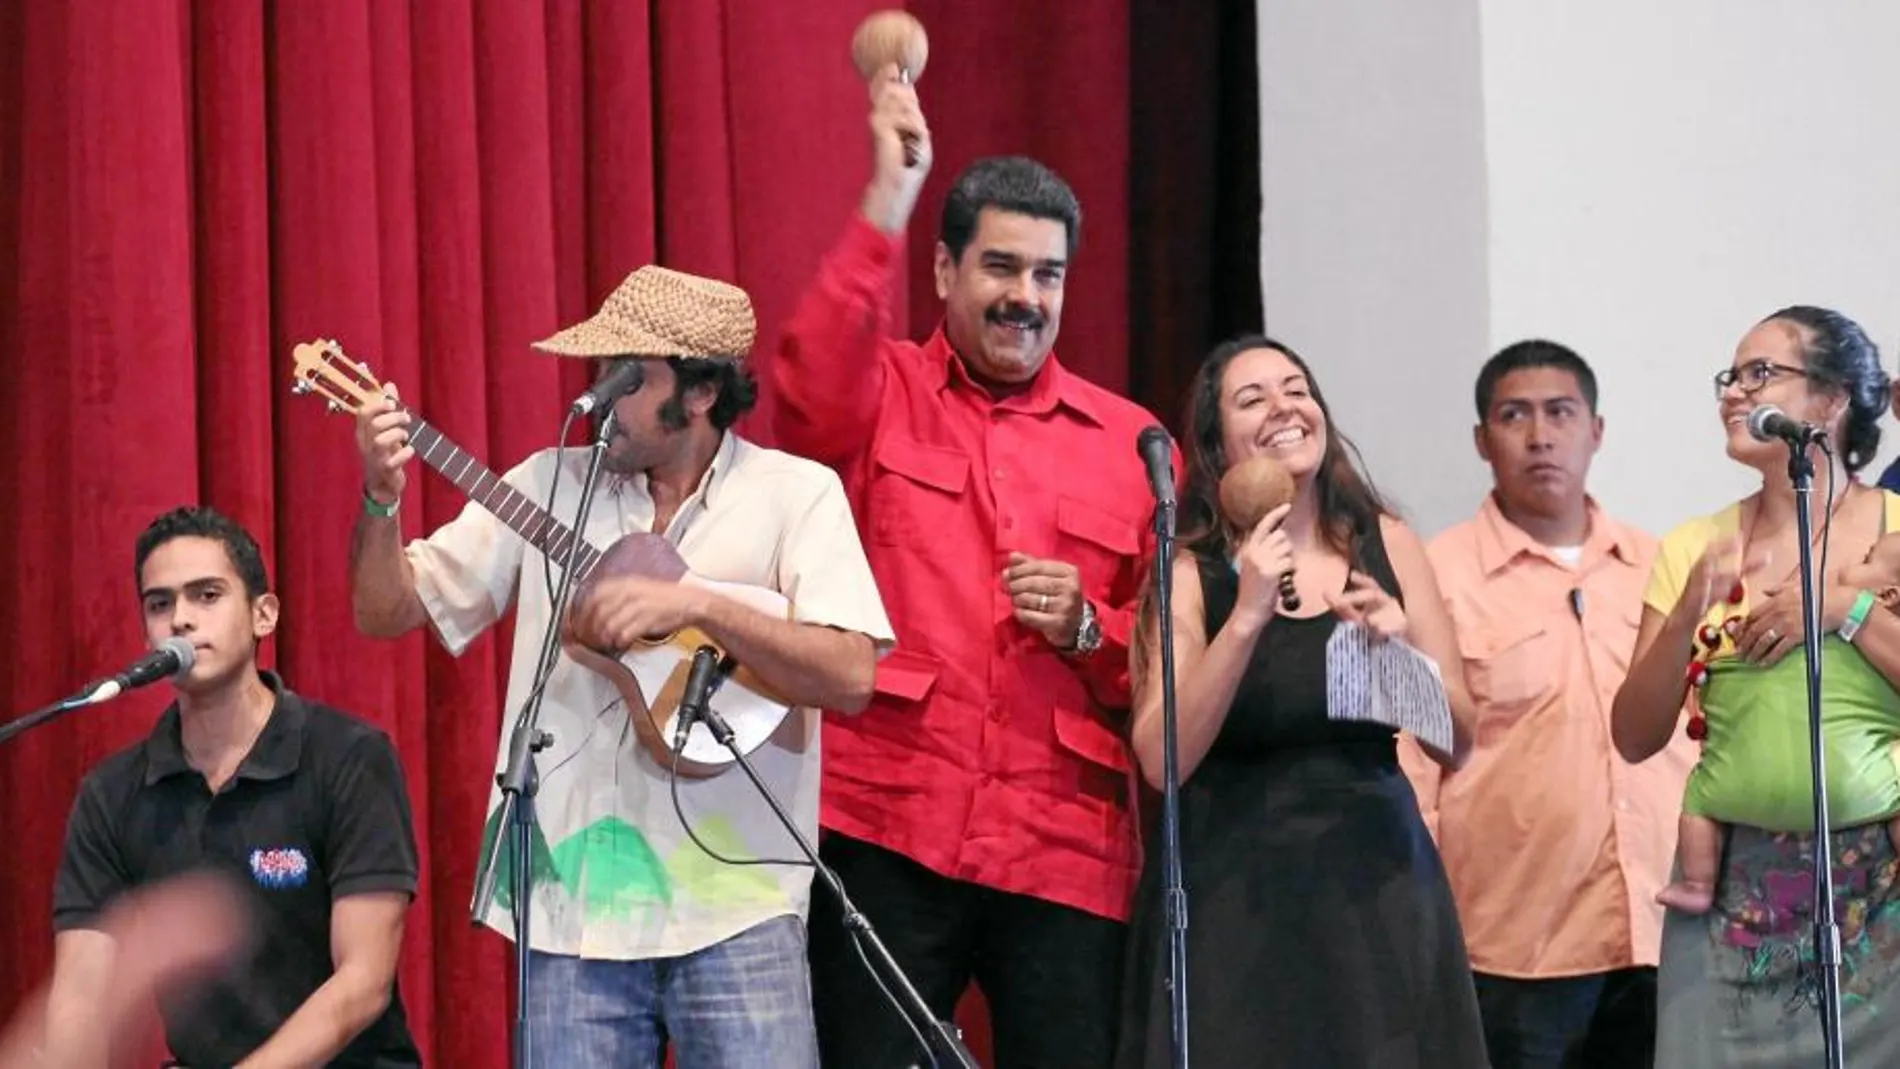 Al ritmo de las maracas, Nicolás Maduro participa en un acto público, ayer, en Caracas